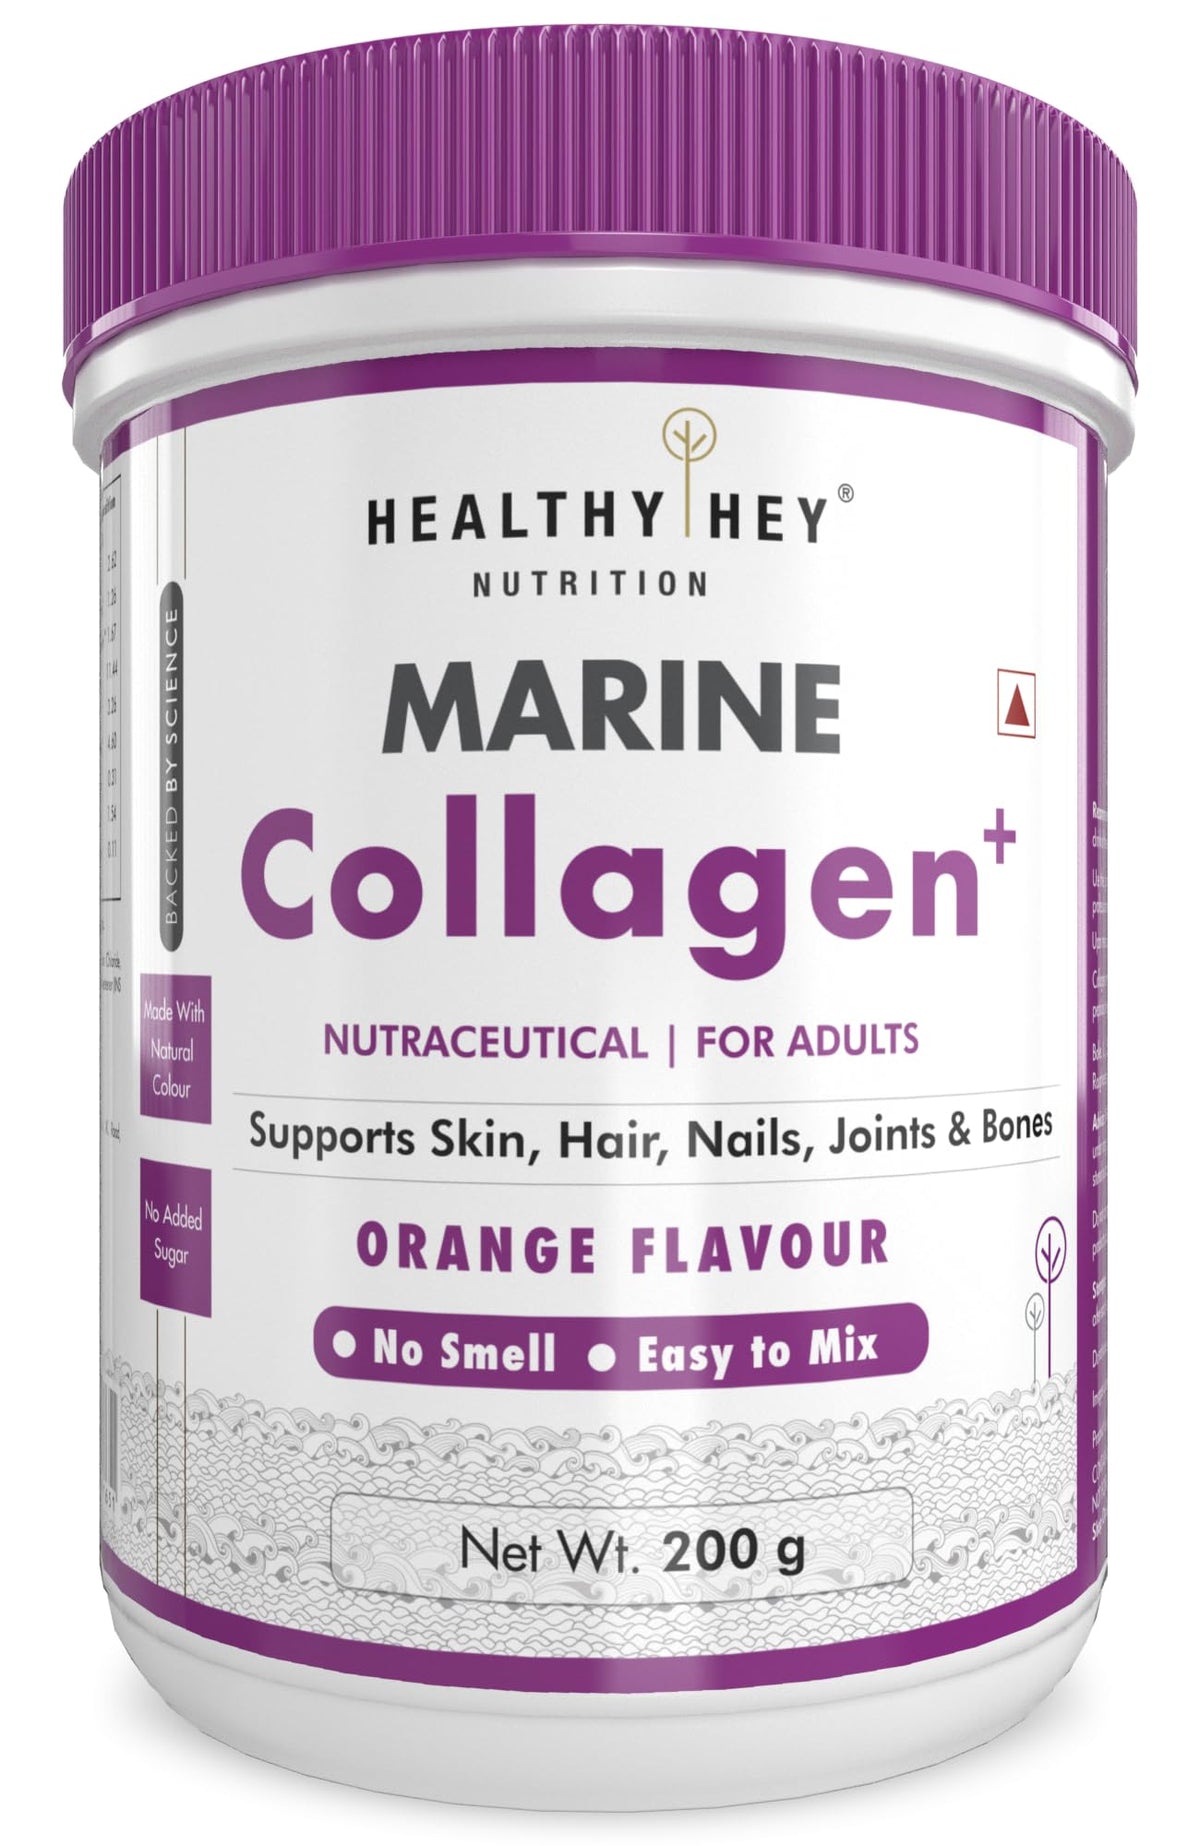 HealthyHey Marine Collagen Powder 200g - Marine Collagen Peptides | Type 1 Collagen Protein Supplement with Hyaluronic Acid | Amino Acids for Skin, Hair, Nails | Paleo Friendly, Non-GMO (Orange Flavour, 200g)